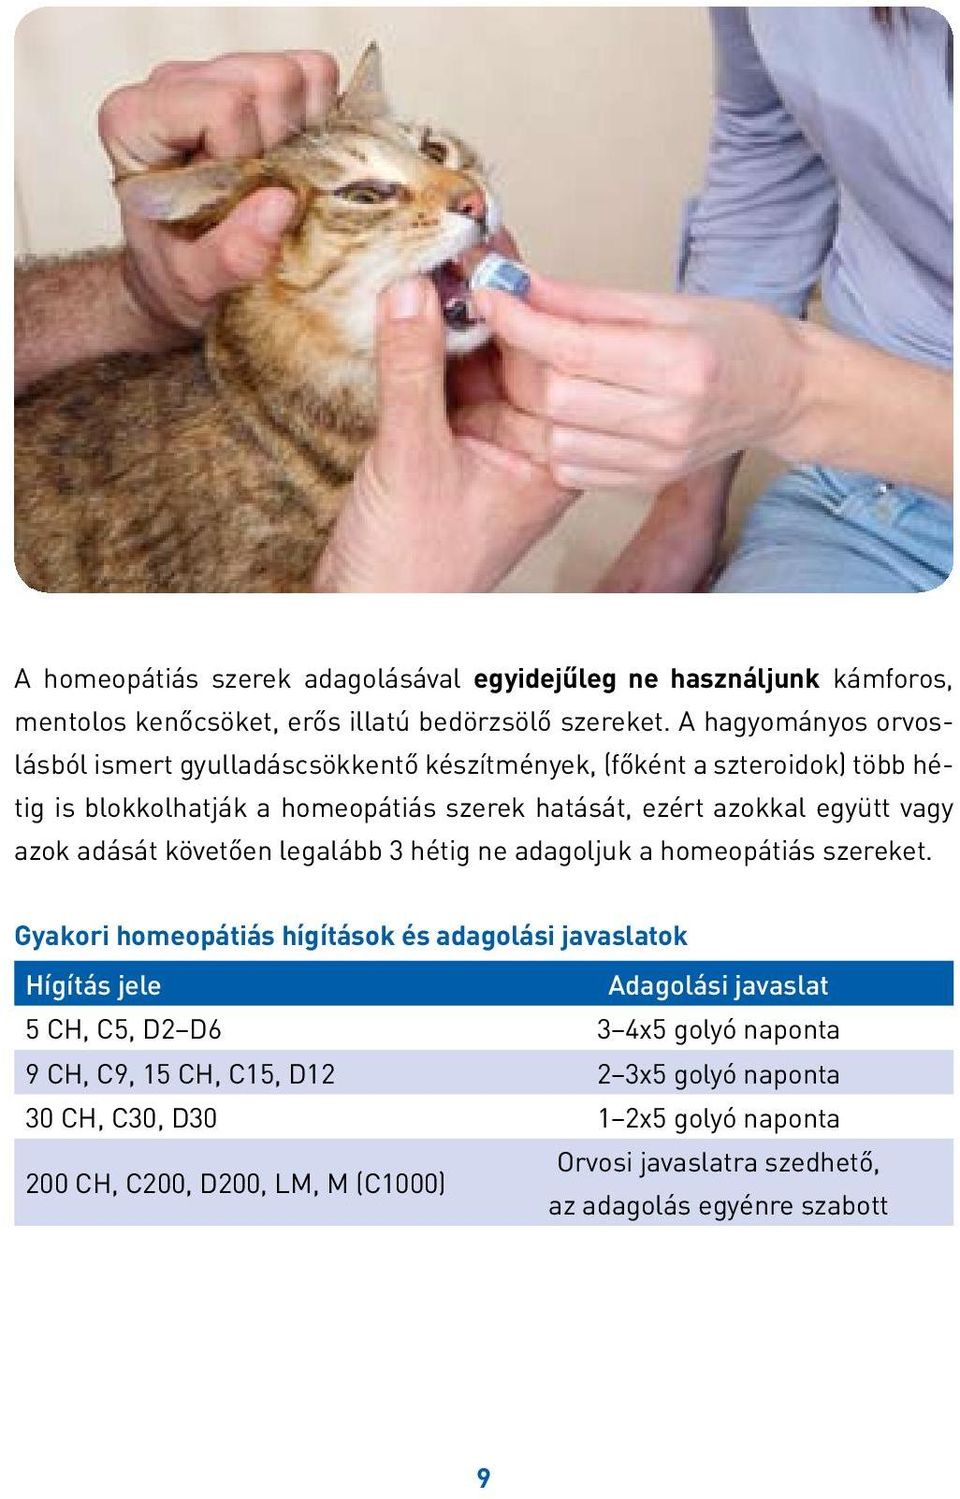 Kutyabaj És macskajaj homeopátiás kezelése - PDF Ingyenes letöltés